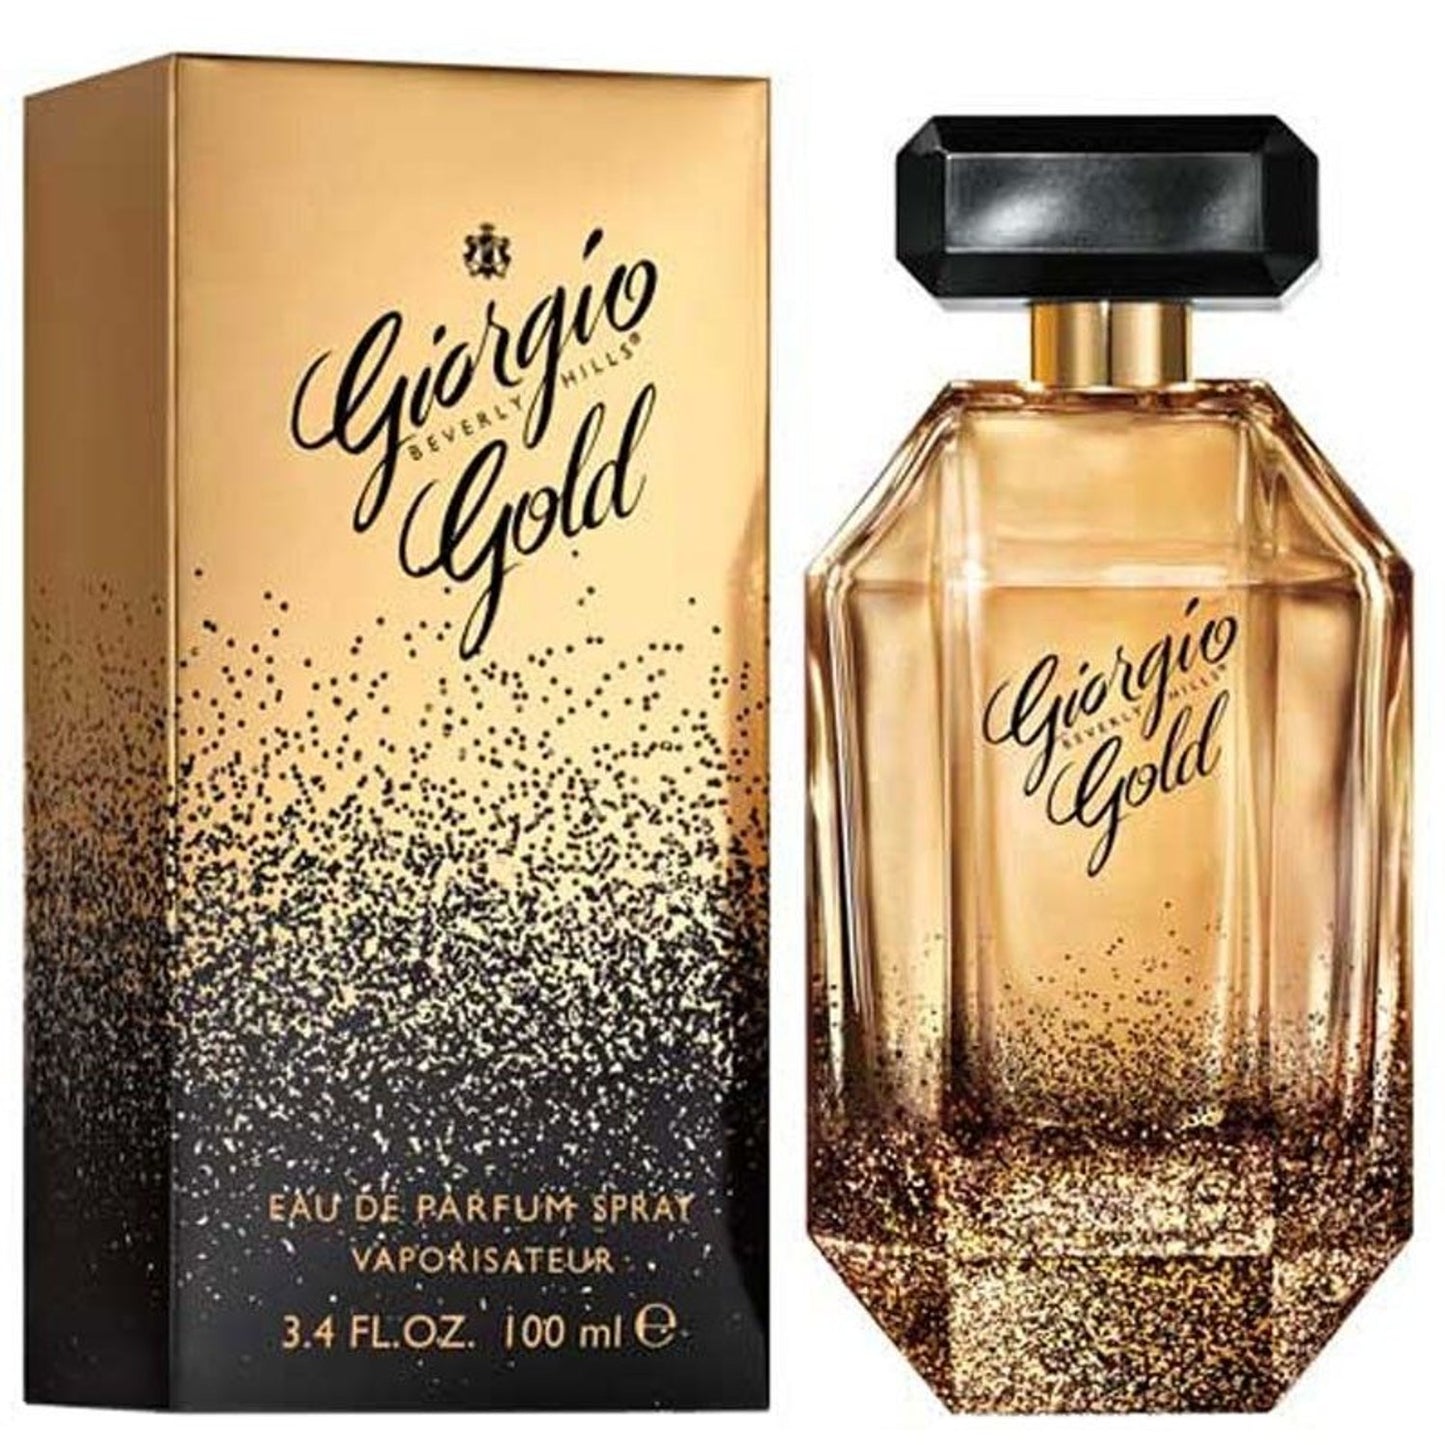 Giorgio Beverly Hills Gold Eau De Parfum For Women 100ml